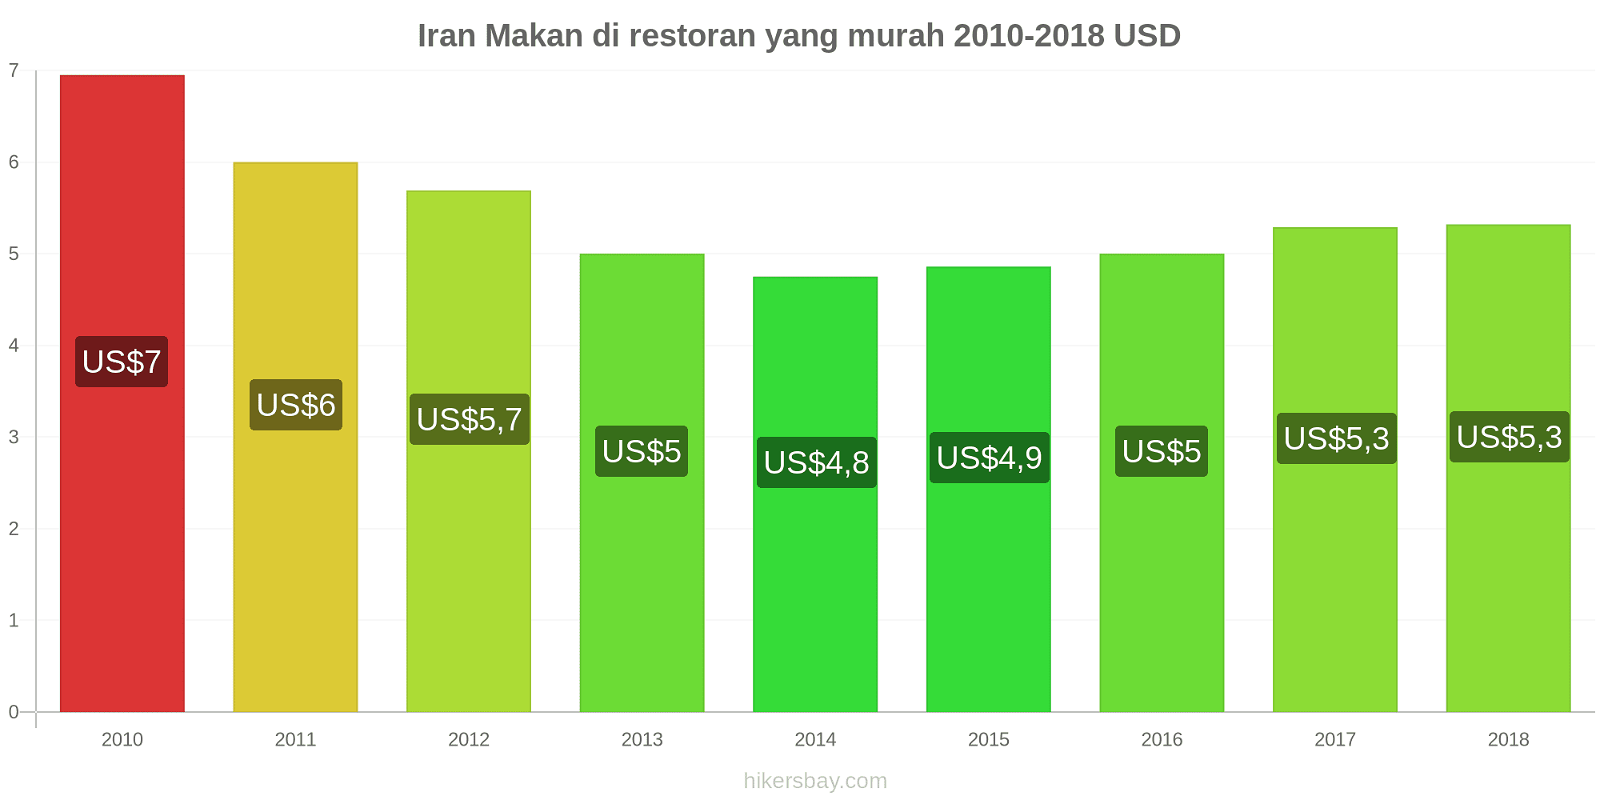 Iran perubahan harga Makan di restoran yang terjangkau hikersbay.com